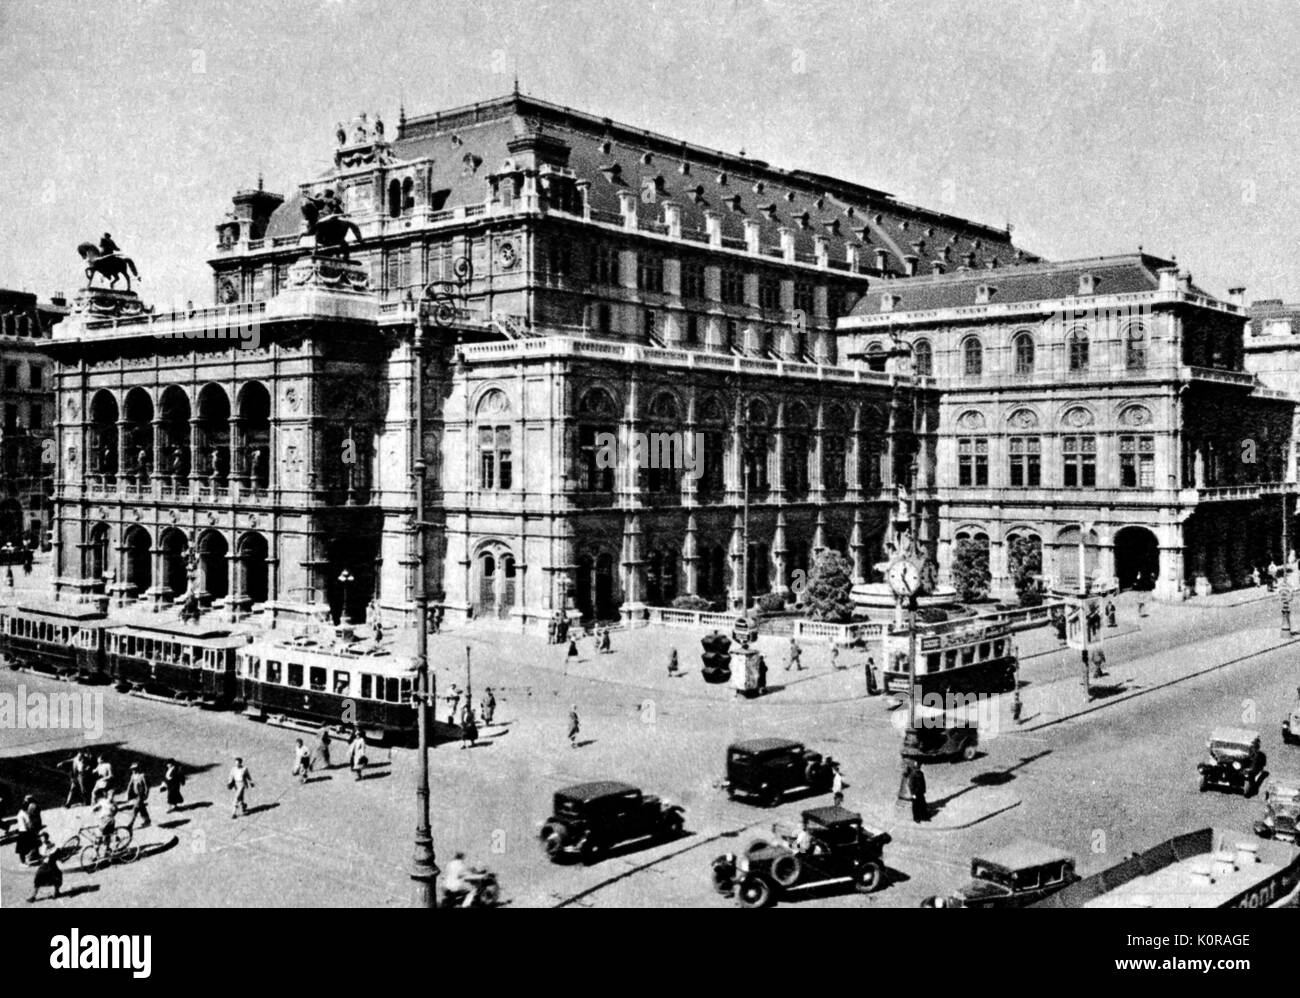 VIENNA. La Staatsoper (Opera di Stato), c.1920s. Aperto nel 1869. Amministrazione: F. Schalk (1919-1924), C. Krauss (1929-1934), R. Strauss (joint direttore, 1919 - ). Foto Stock